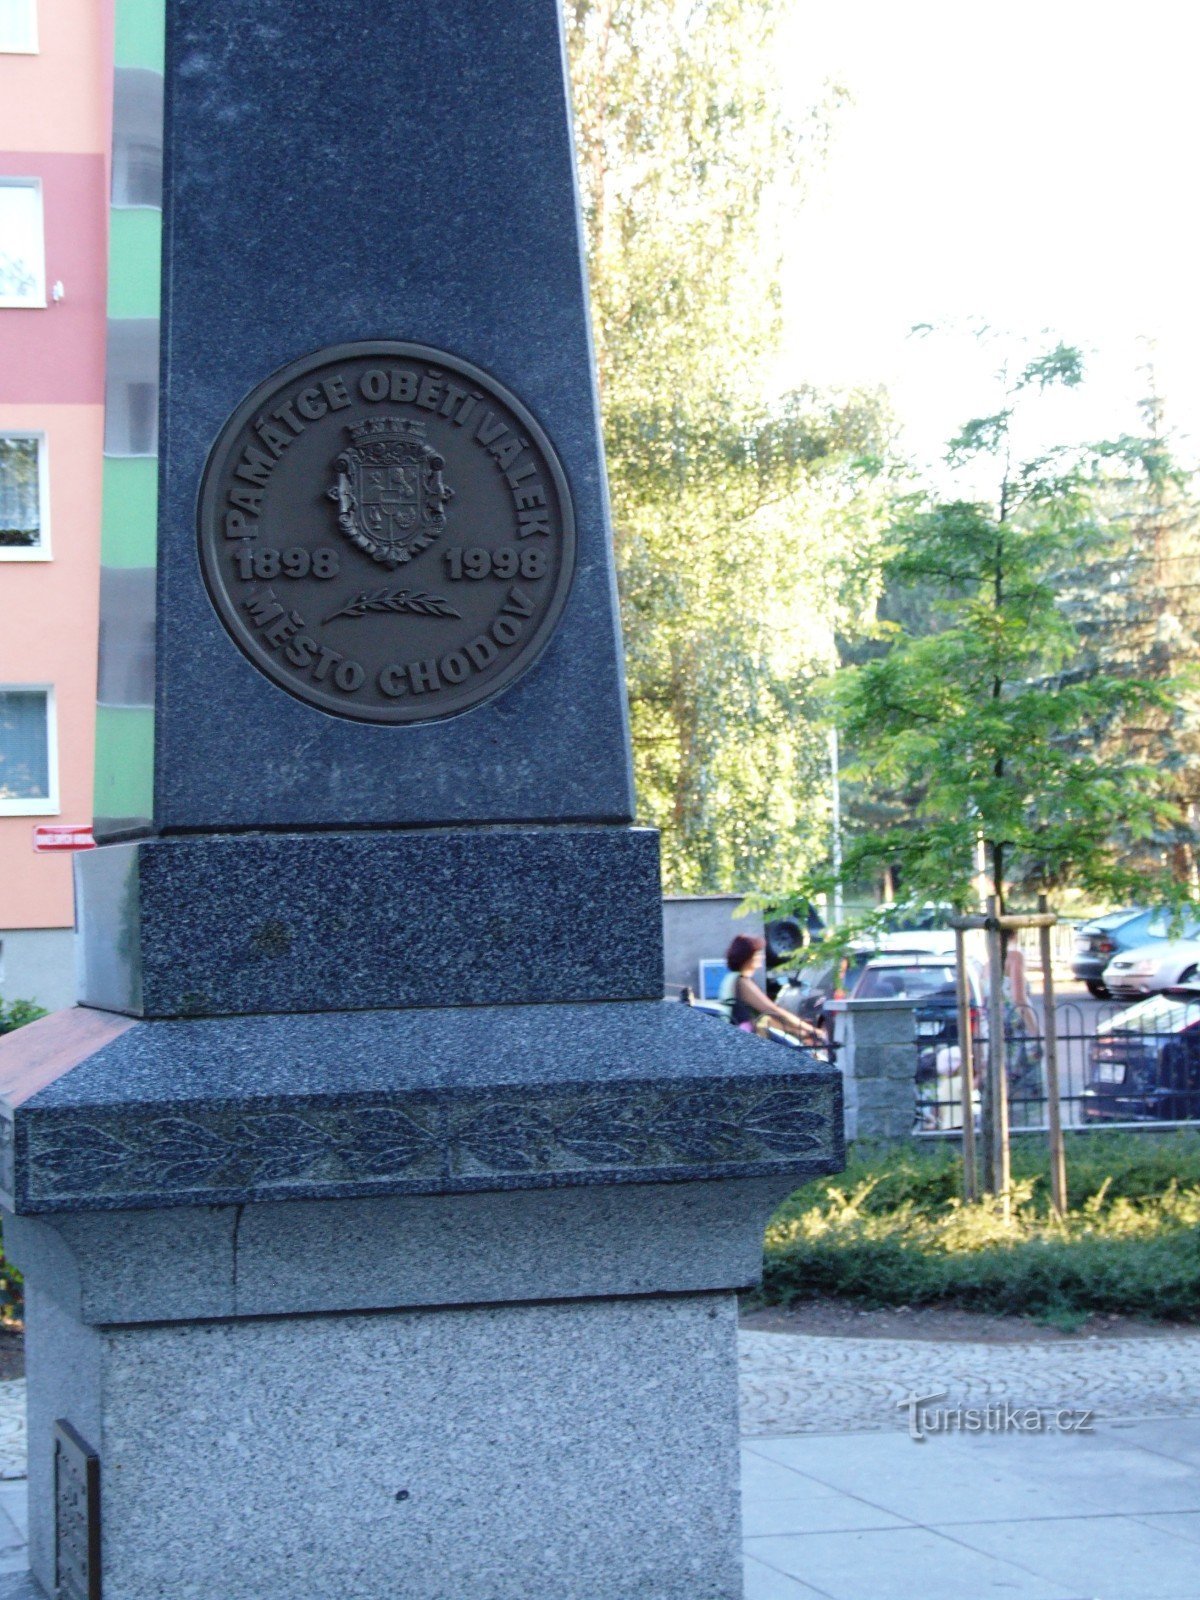 Monumento para homenagear a memória das vítimas das guerras